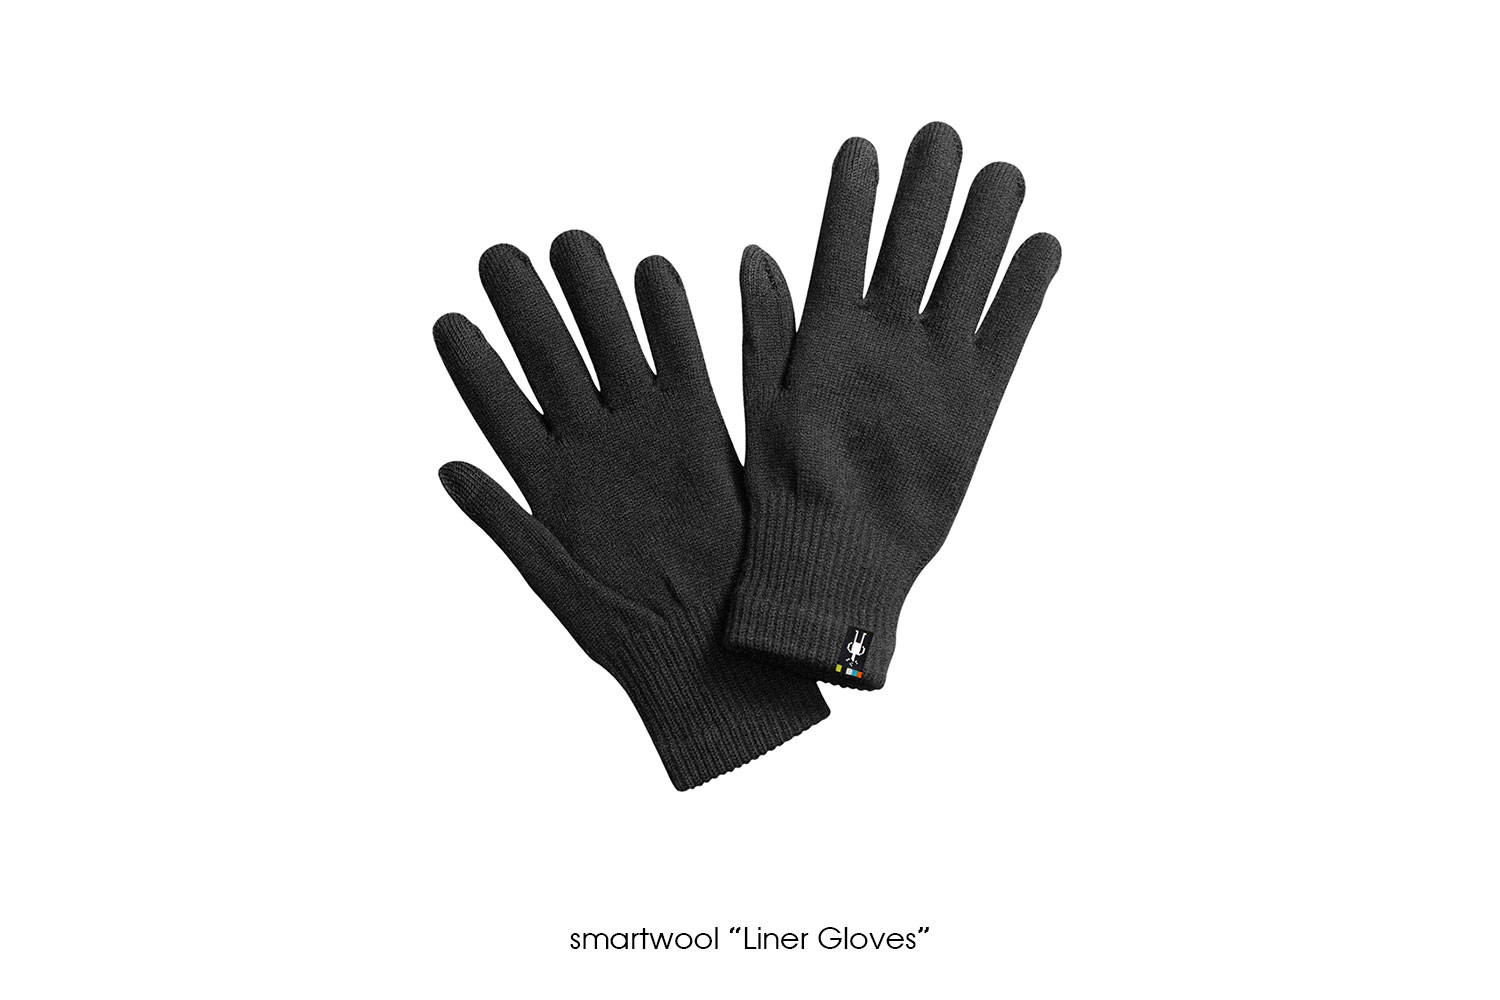 smartwool "Liner Gloves"